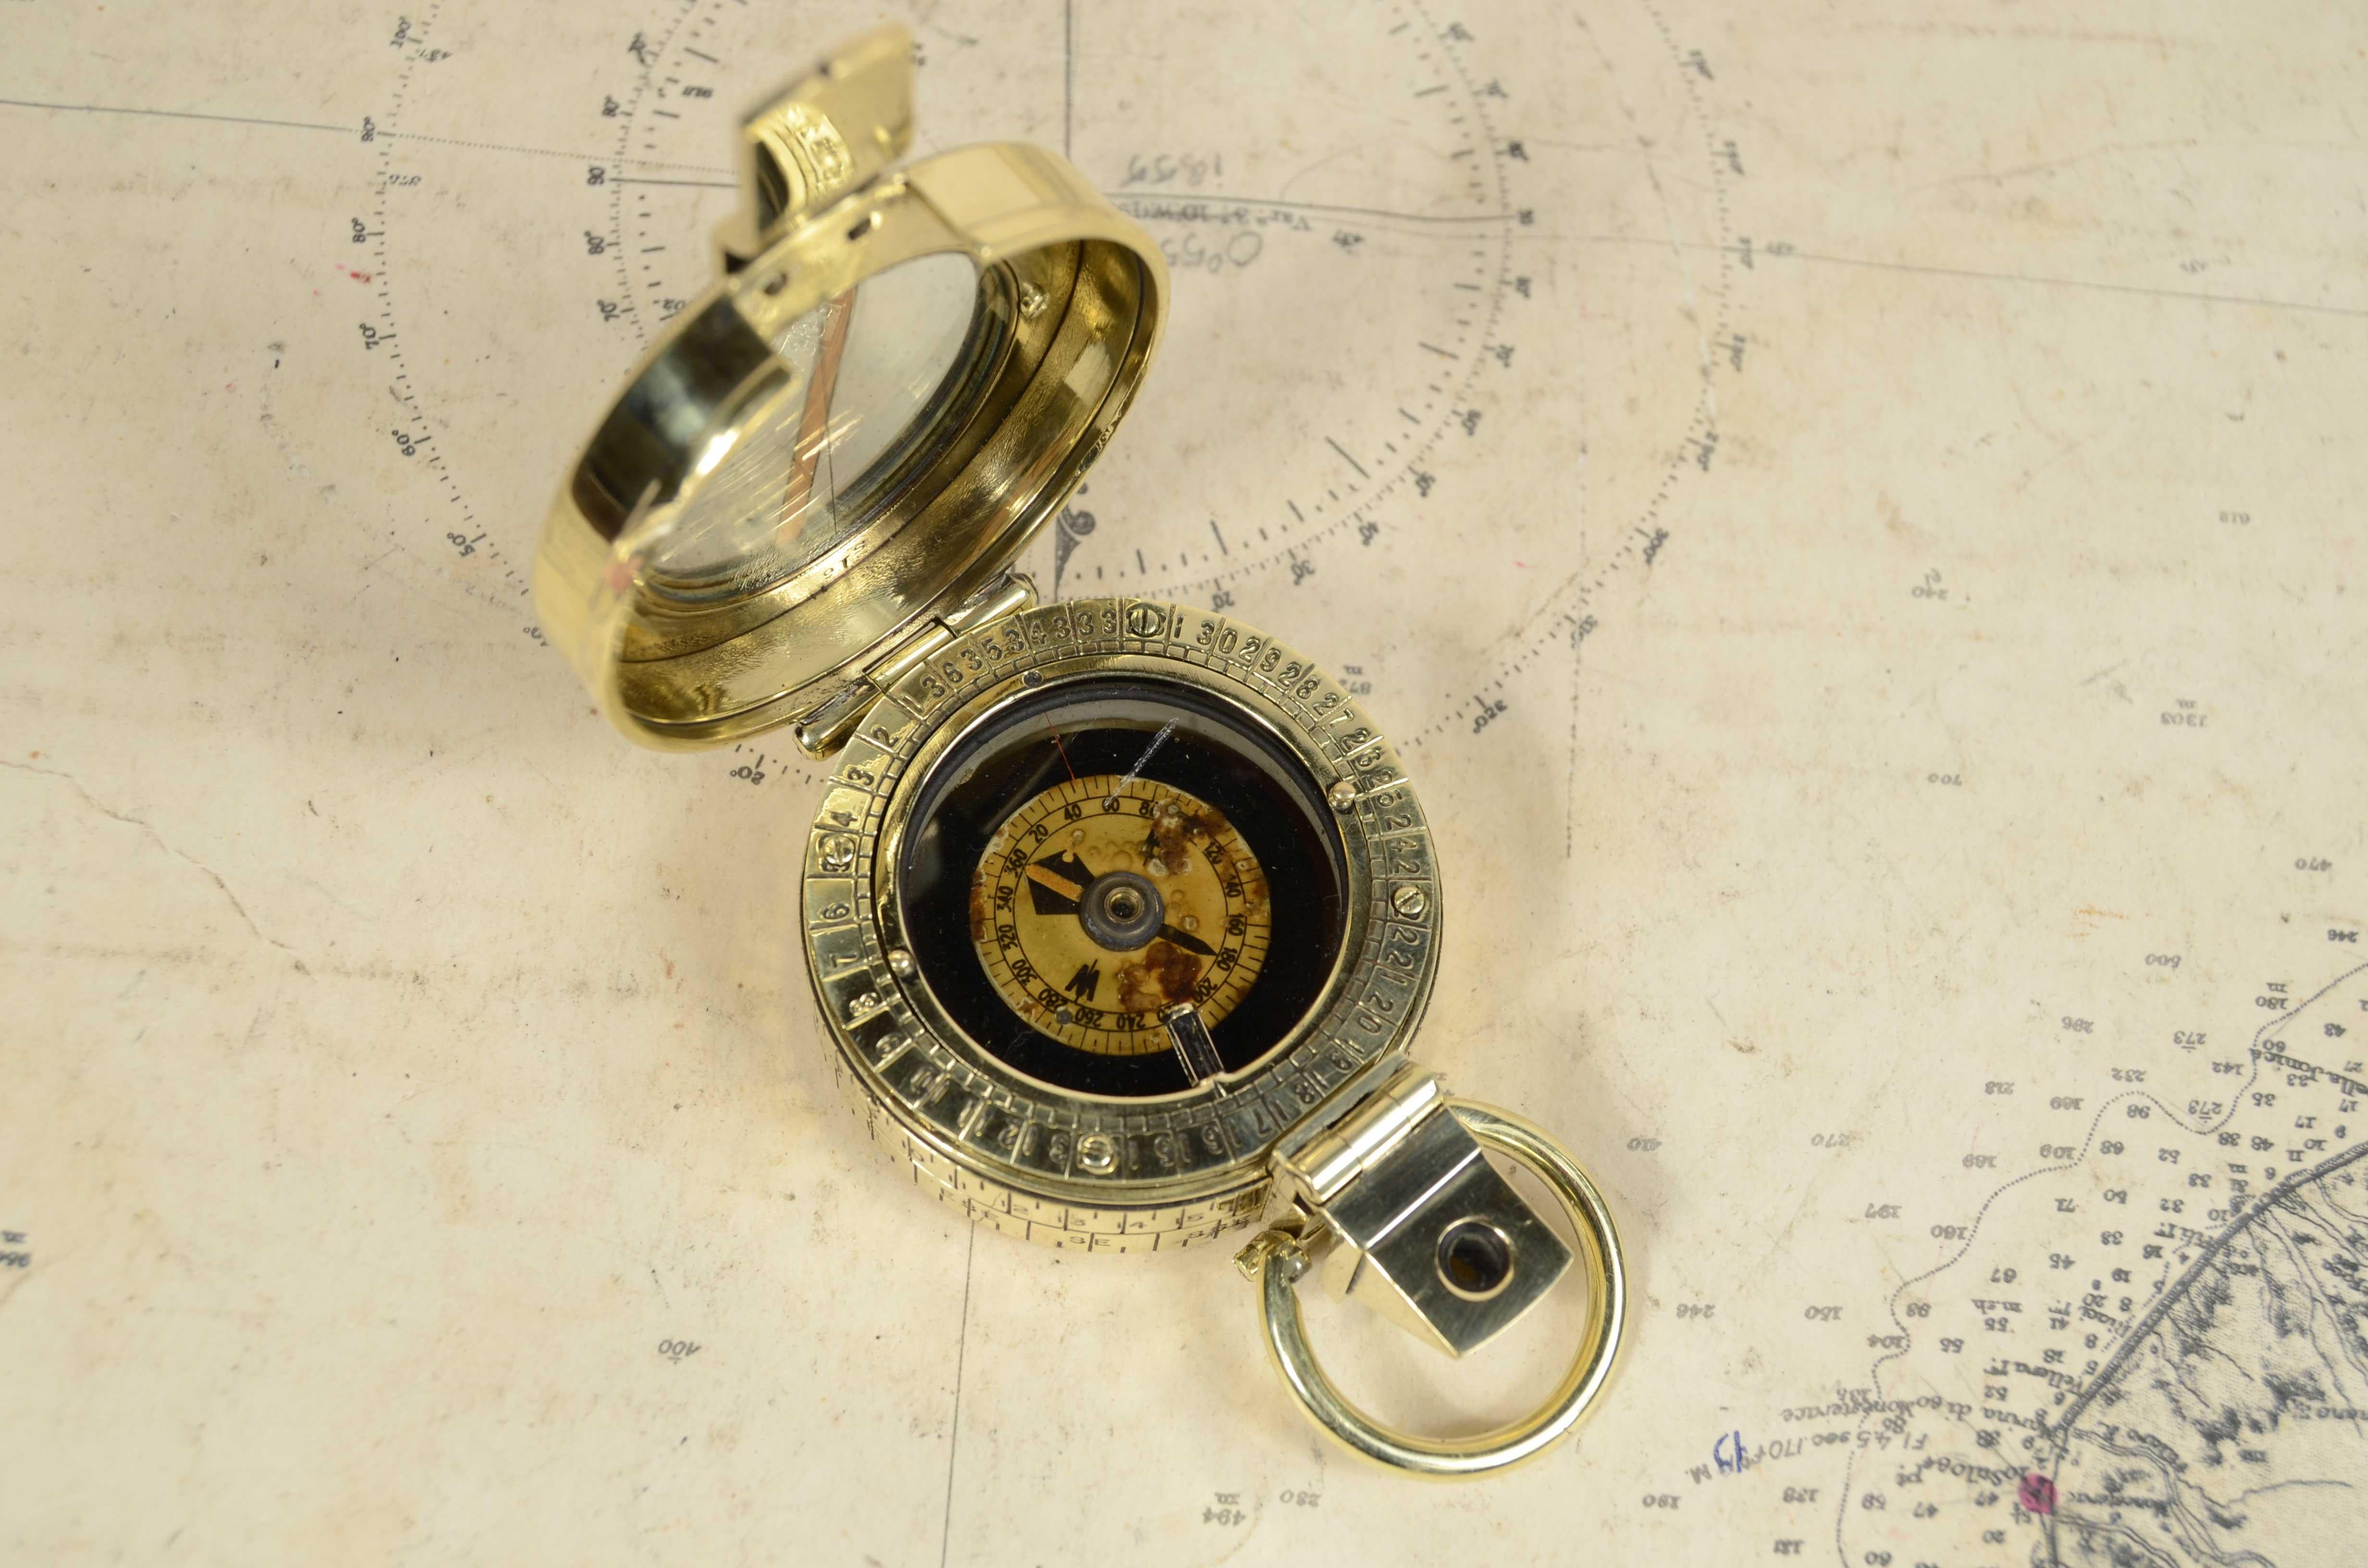 Prismatischer Kompass  tasche  flüssigkeit und Nachweis signiert F. Barker's & Son Makers London 1917, Pat Nr. 29677/10, Futher Pat Pending,  die während des Ersten Weltkriegs von Offizieren der britischen Armee verwendet wurde. Dies ist ein